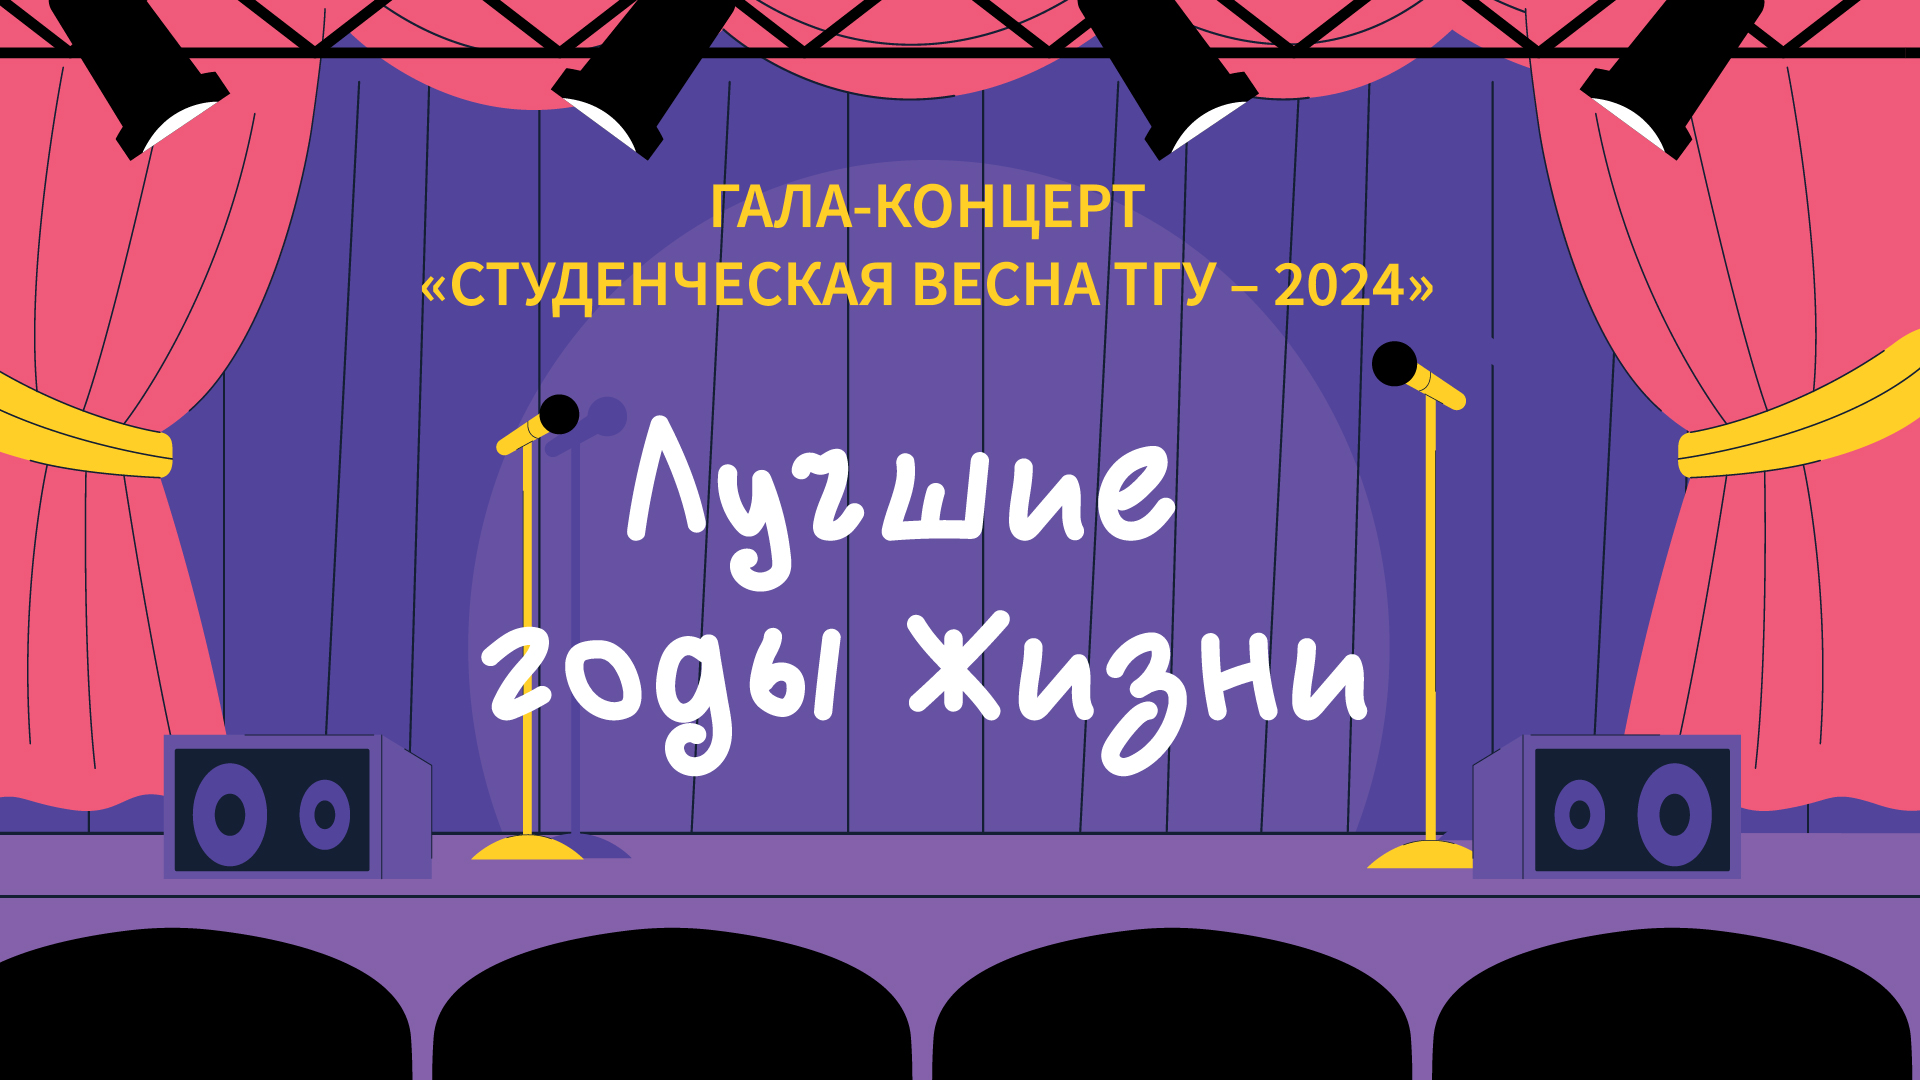 ТГУ Show: Гала-концерт фестиваля «Студенческая весна ТГУ – 2024»